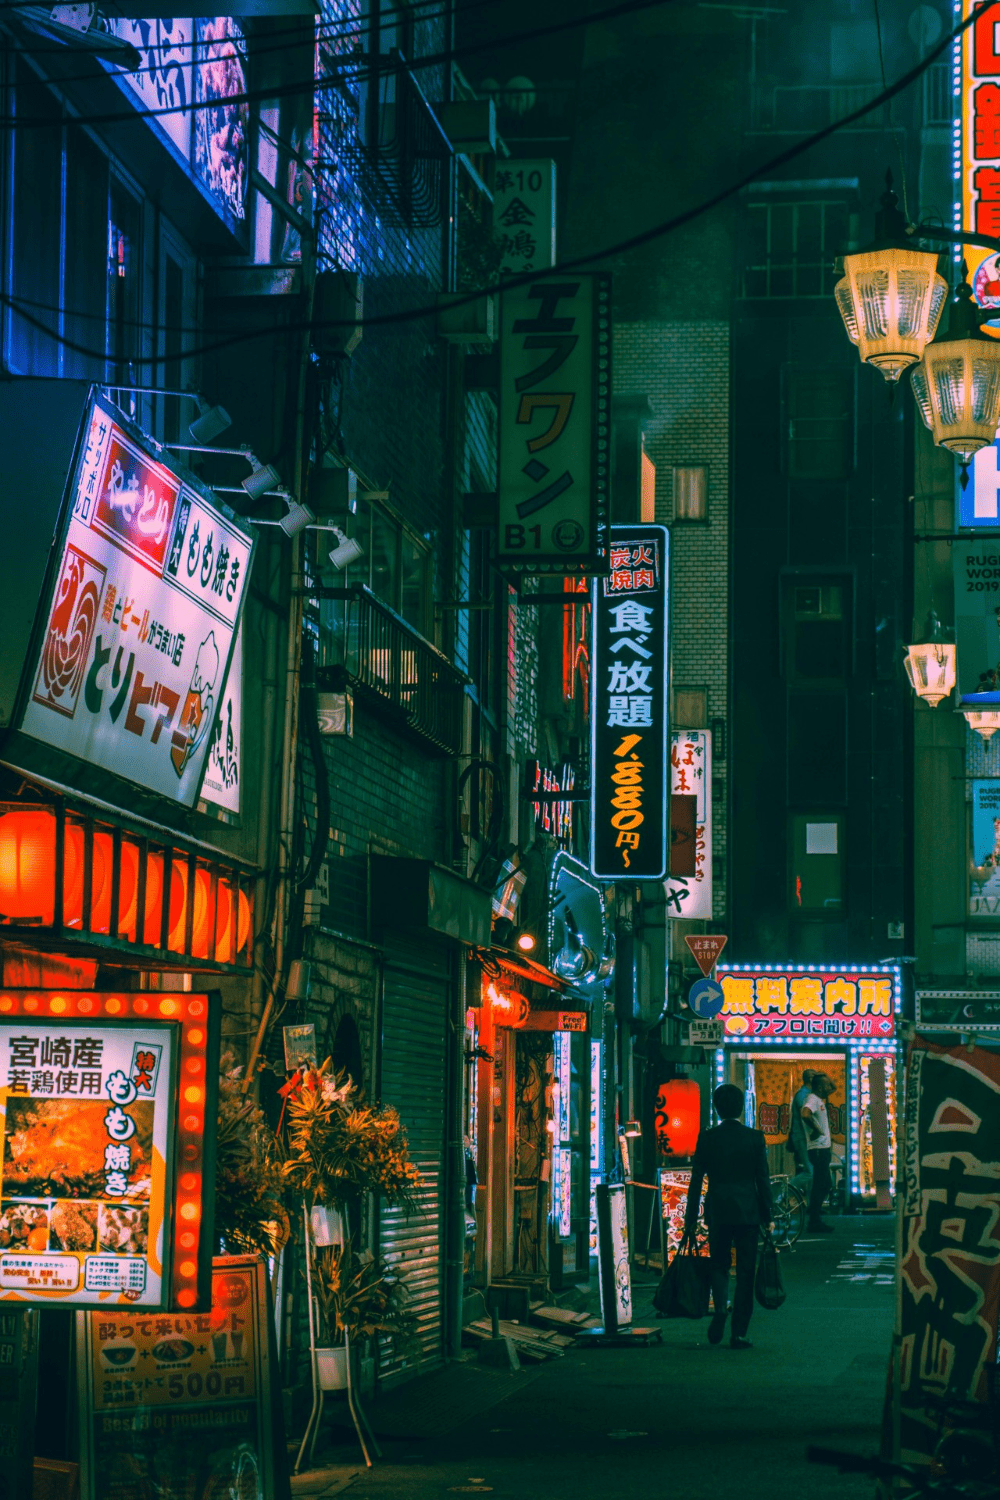 Sleepless in Tokyo